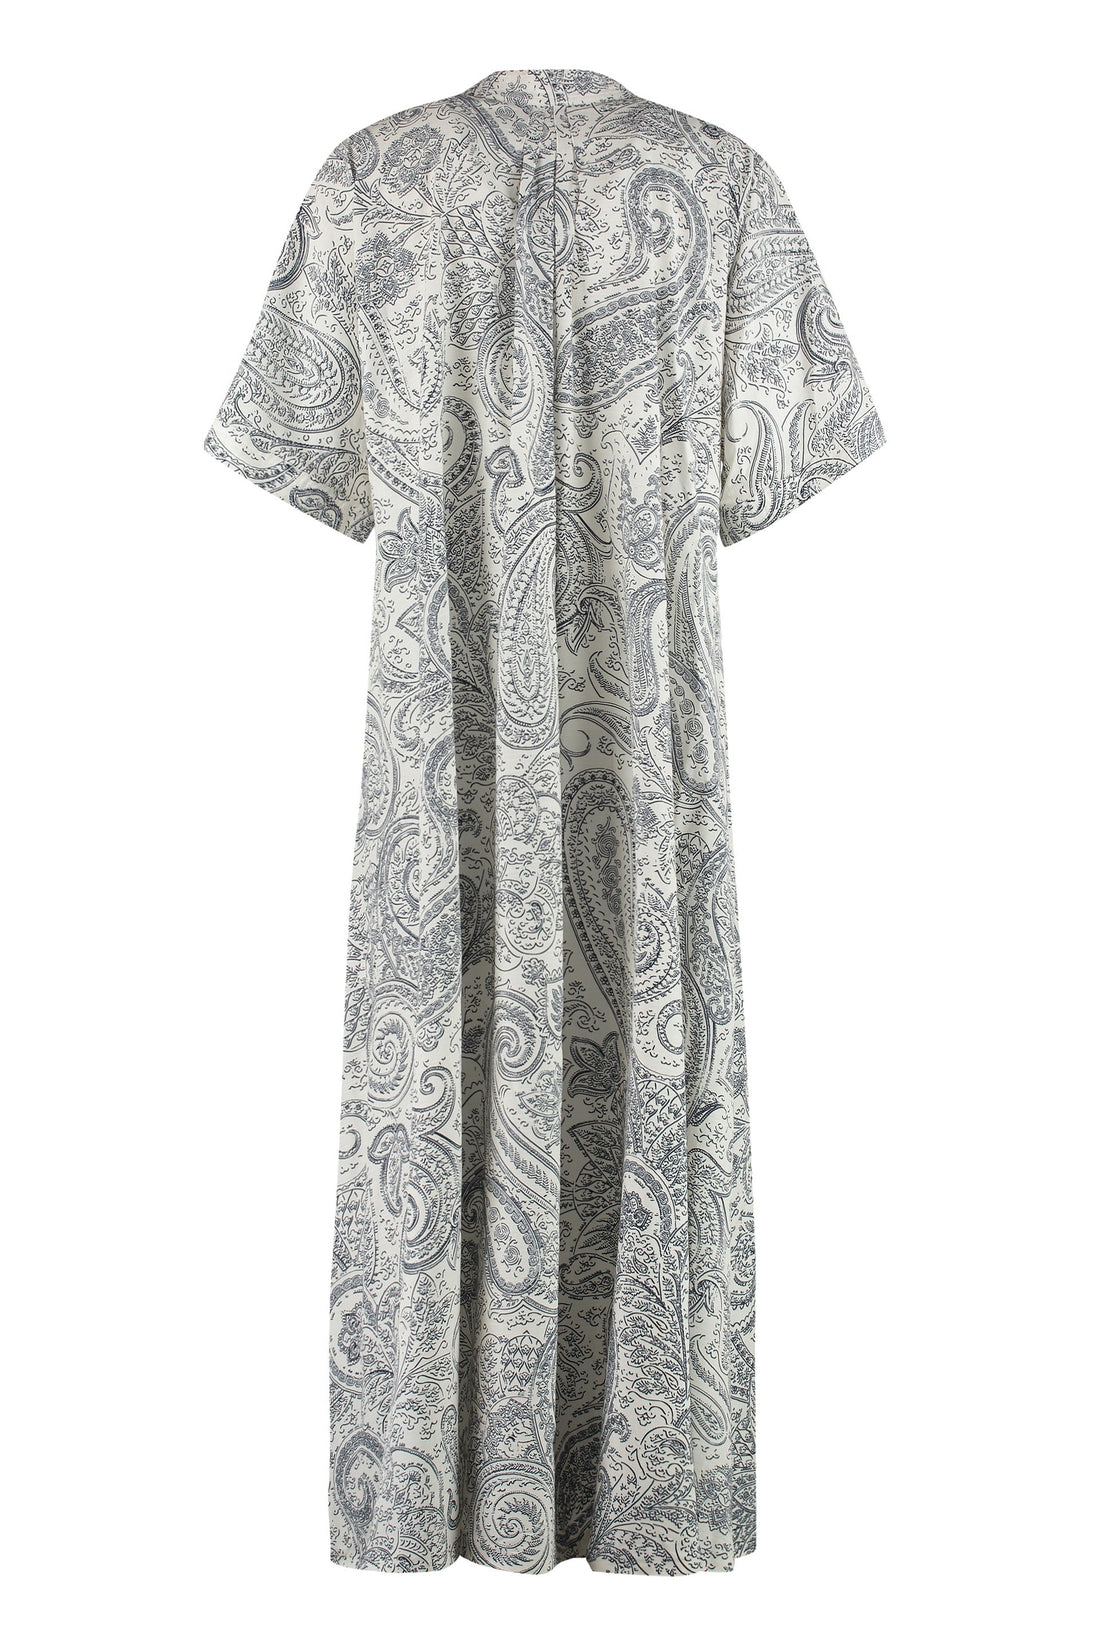 Etro-OUTLET-SALE-Printed maxi dress-ARCHIVIST